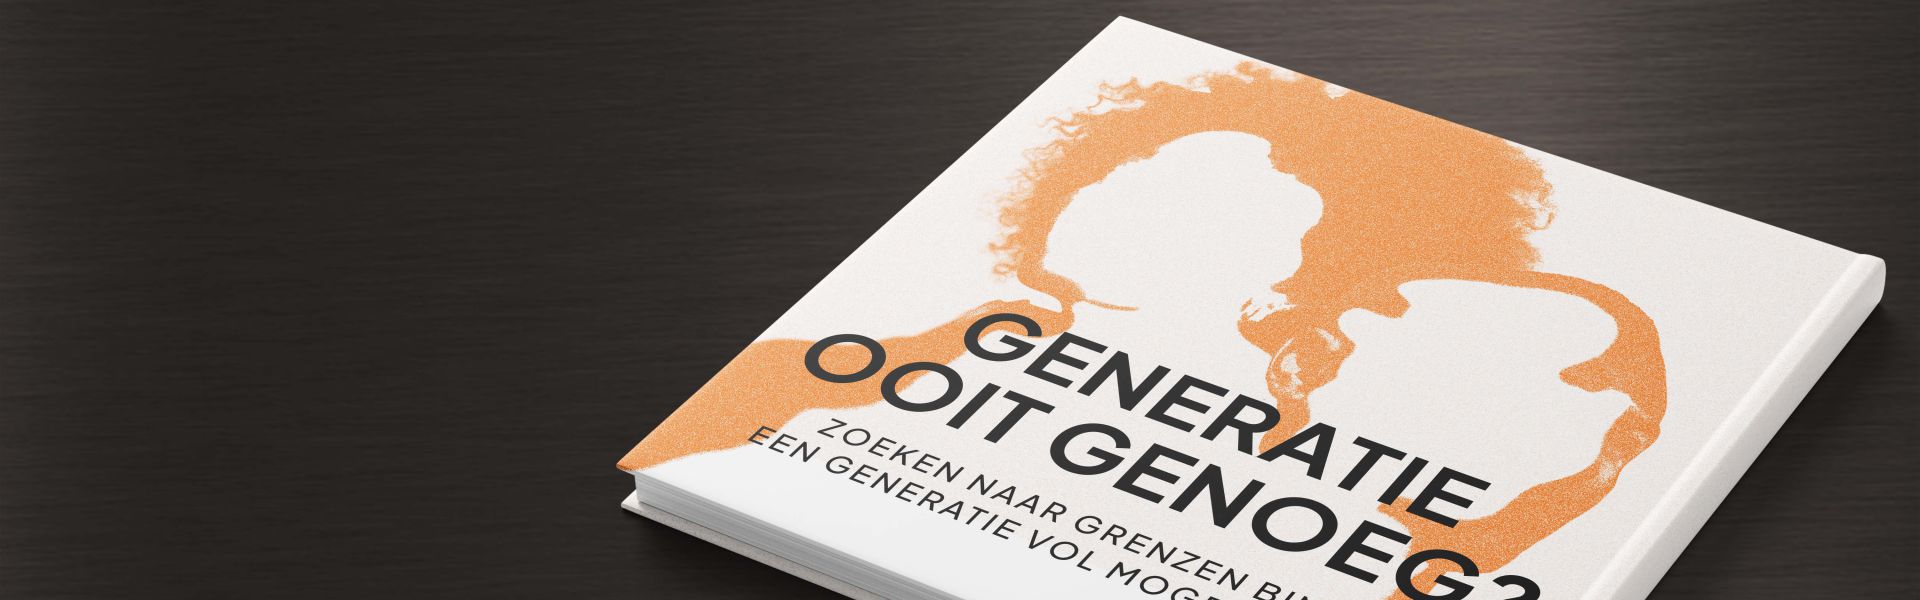 Generatie ooit genoeg?: Zoeken naar grenzen binnen een generatie vol mogelijkheden